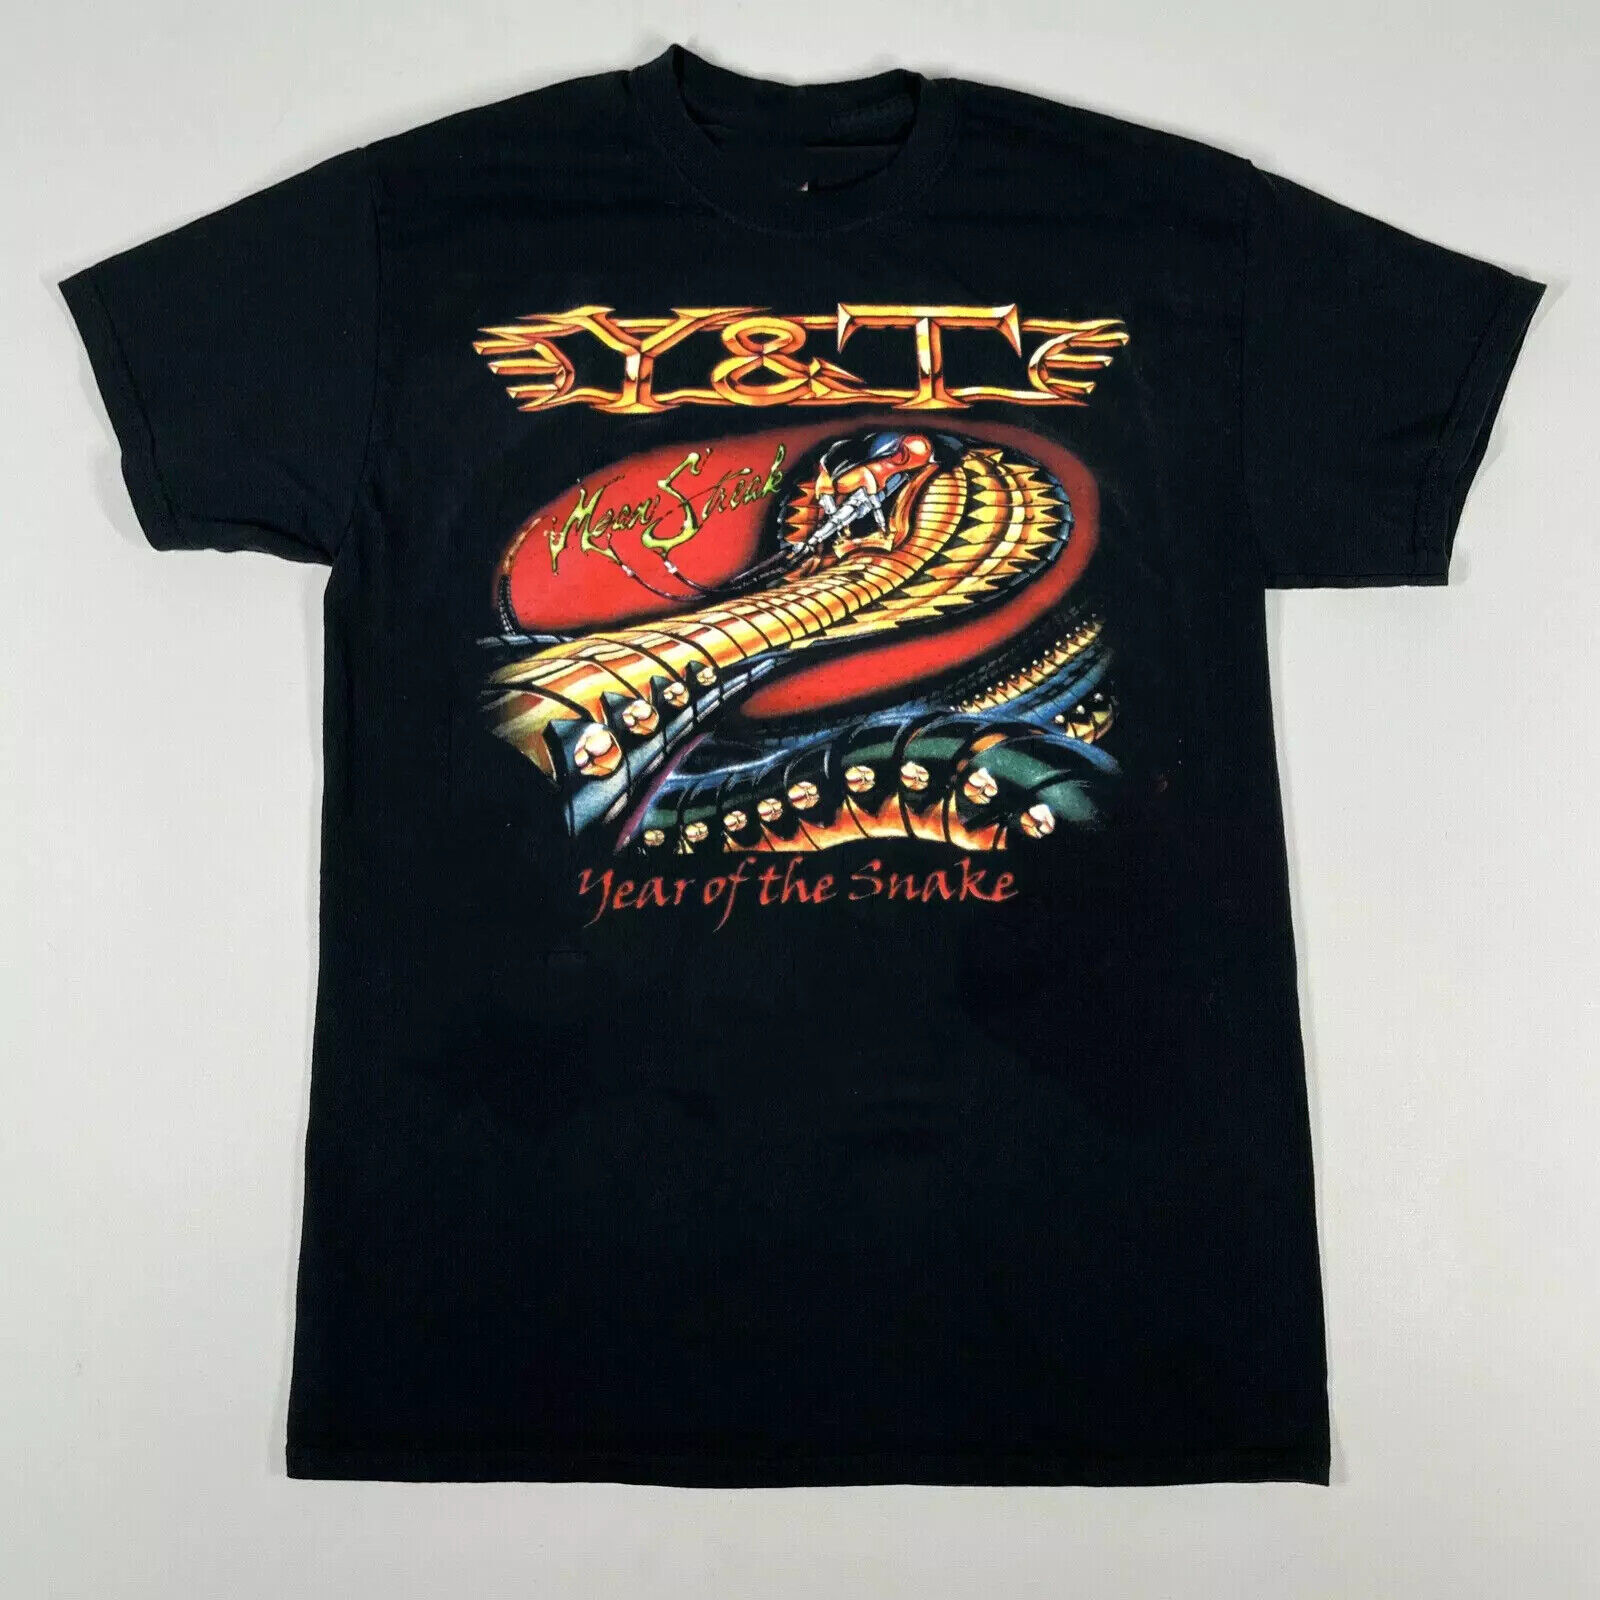 Y&T Band 1983 2013 Tour  Retro Vintage T-shirt S-5XL